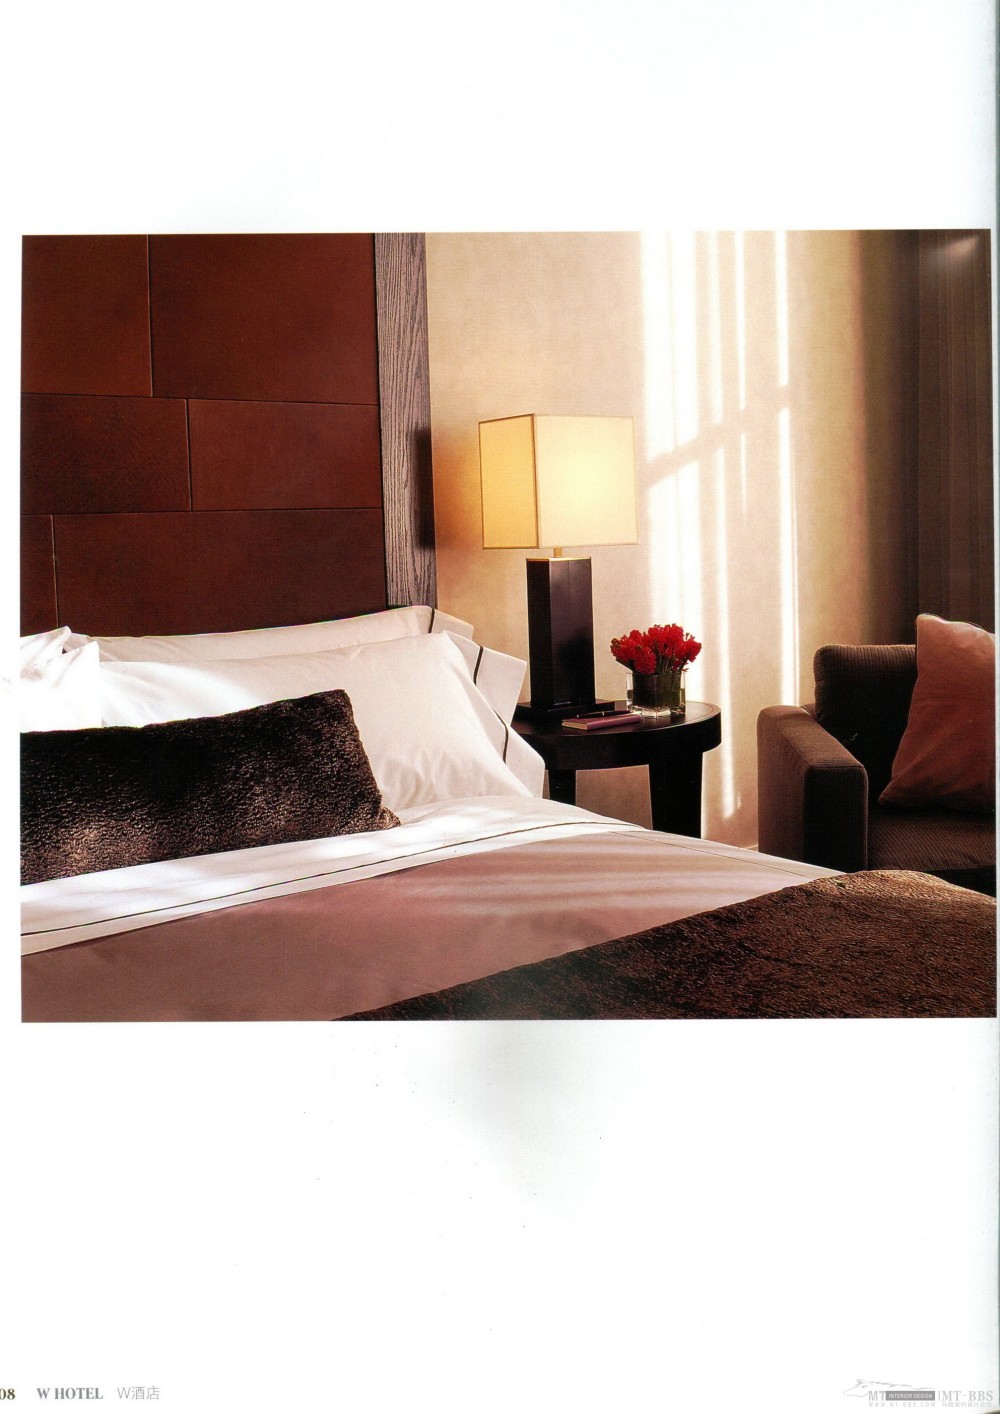 高清 WORLD CLASS HOTEL 顶级国际品牌酒店(上)--j 359M_img308.jpg